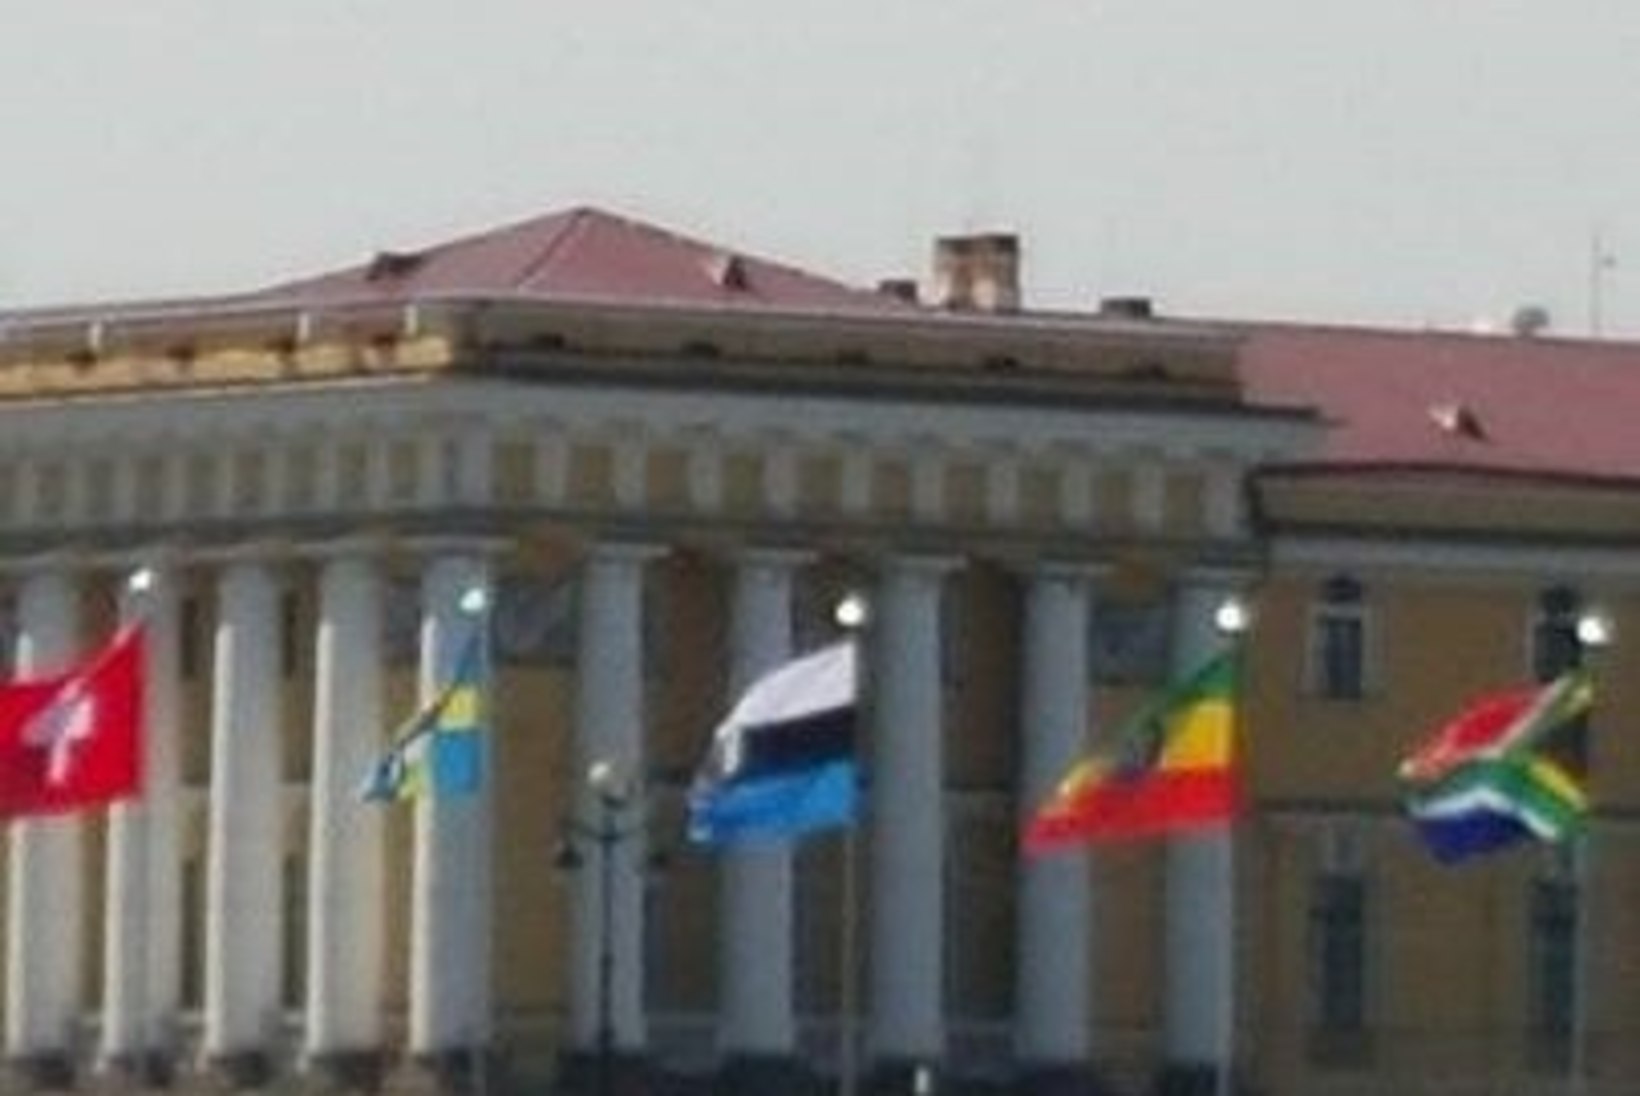 ÕHTULEHE FOTOD: Medvedevi suurfoorum pööras Eesti lippu mitu korda ümber